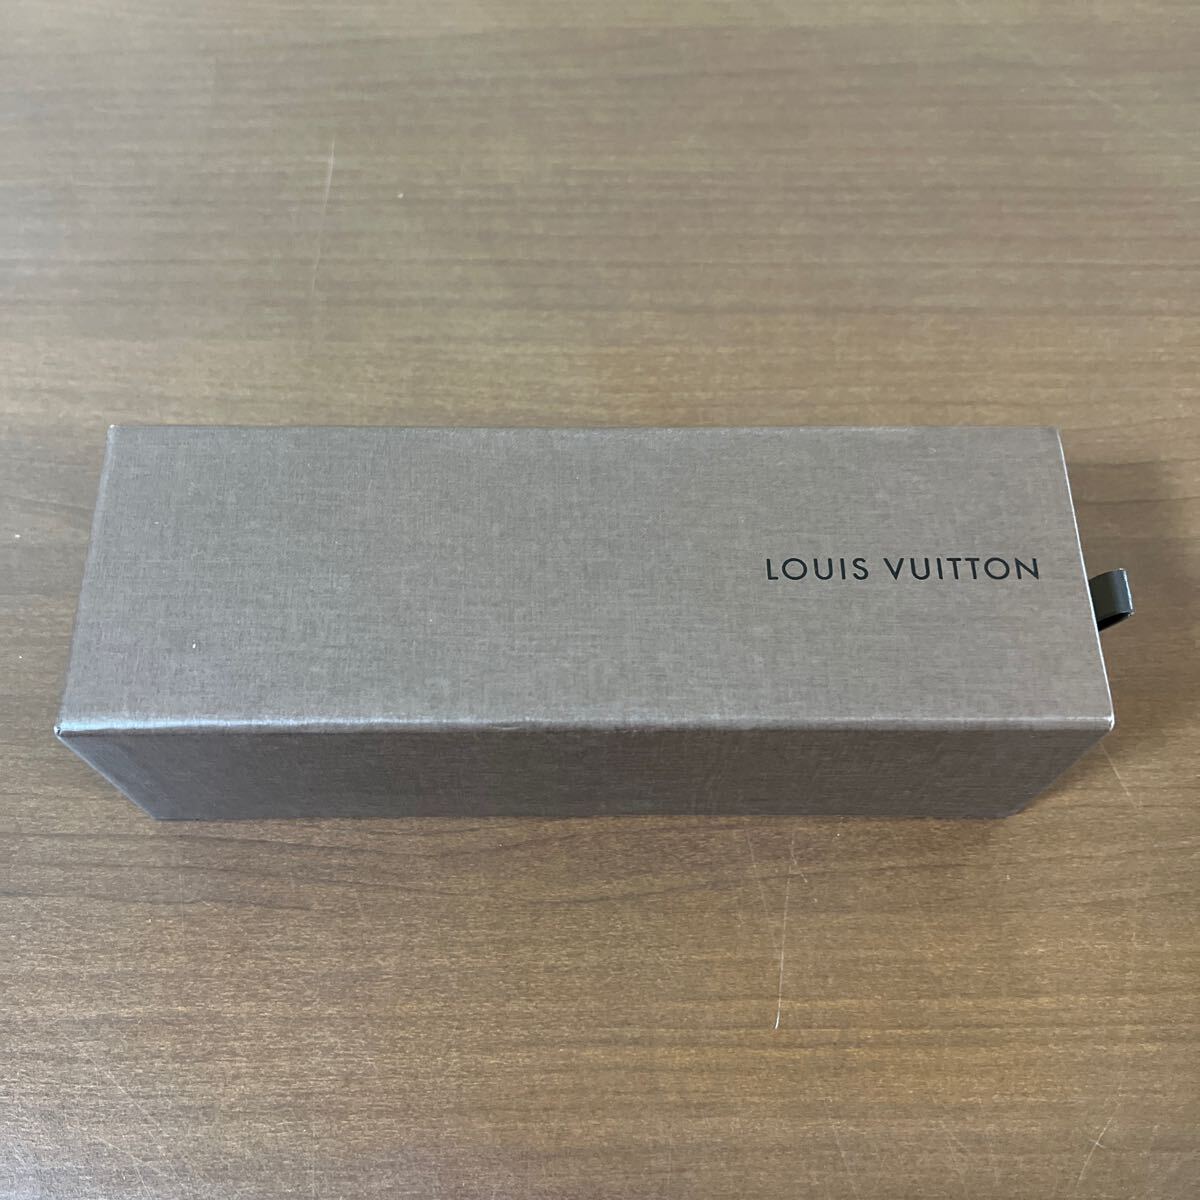 【新品未使用】LOUIS VUITTON ルイヴィトン M99454 ダイス サイコロ キューブ オブジェ シルバー VIP顧客限定